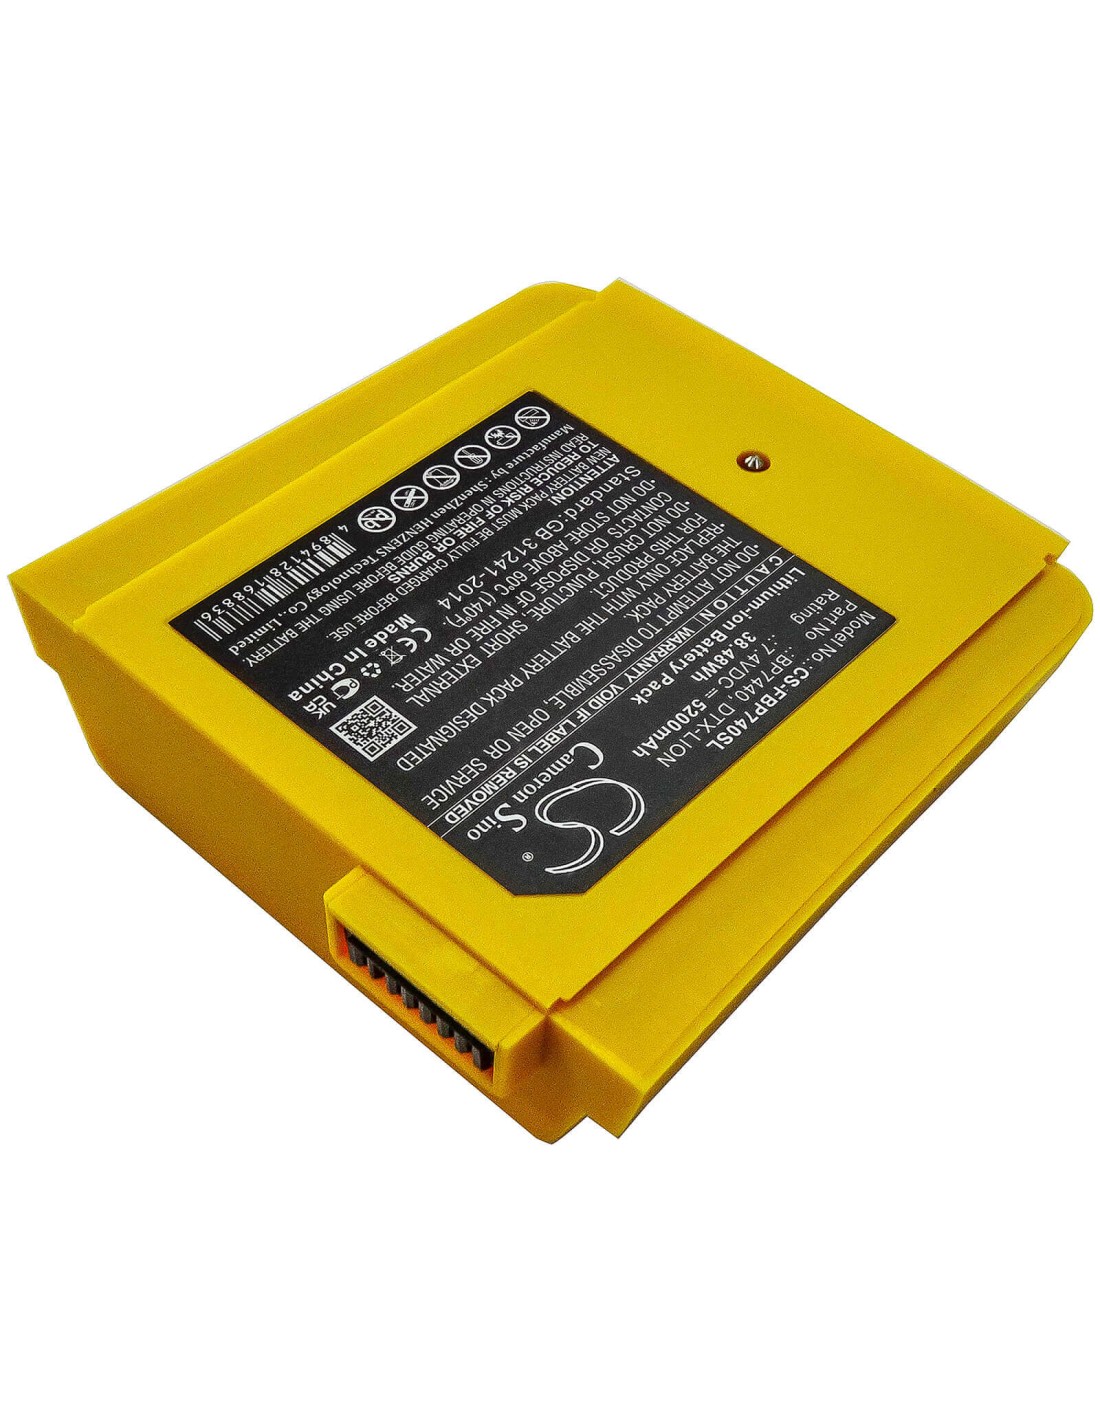 Battery for Fluke, Dtx-1200-m, Dtx-1200-ms, Dtx-1800-m 7.4V, 5200mAh - 38.48Wh